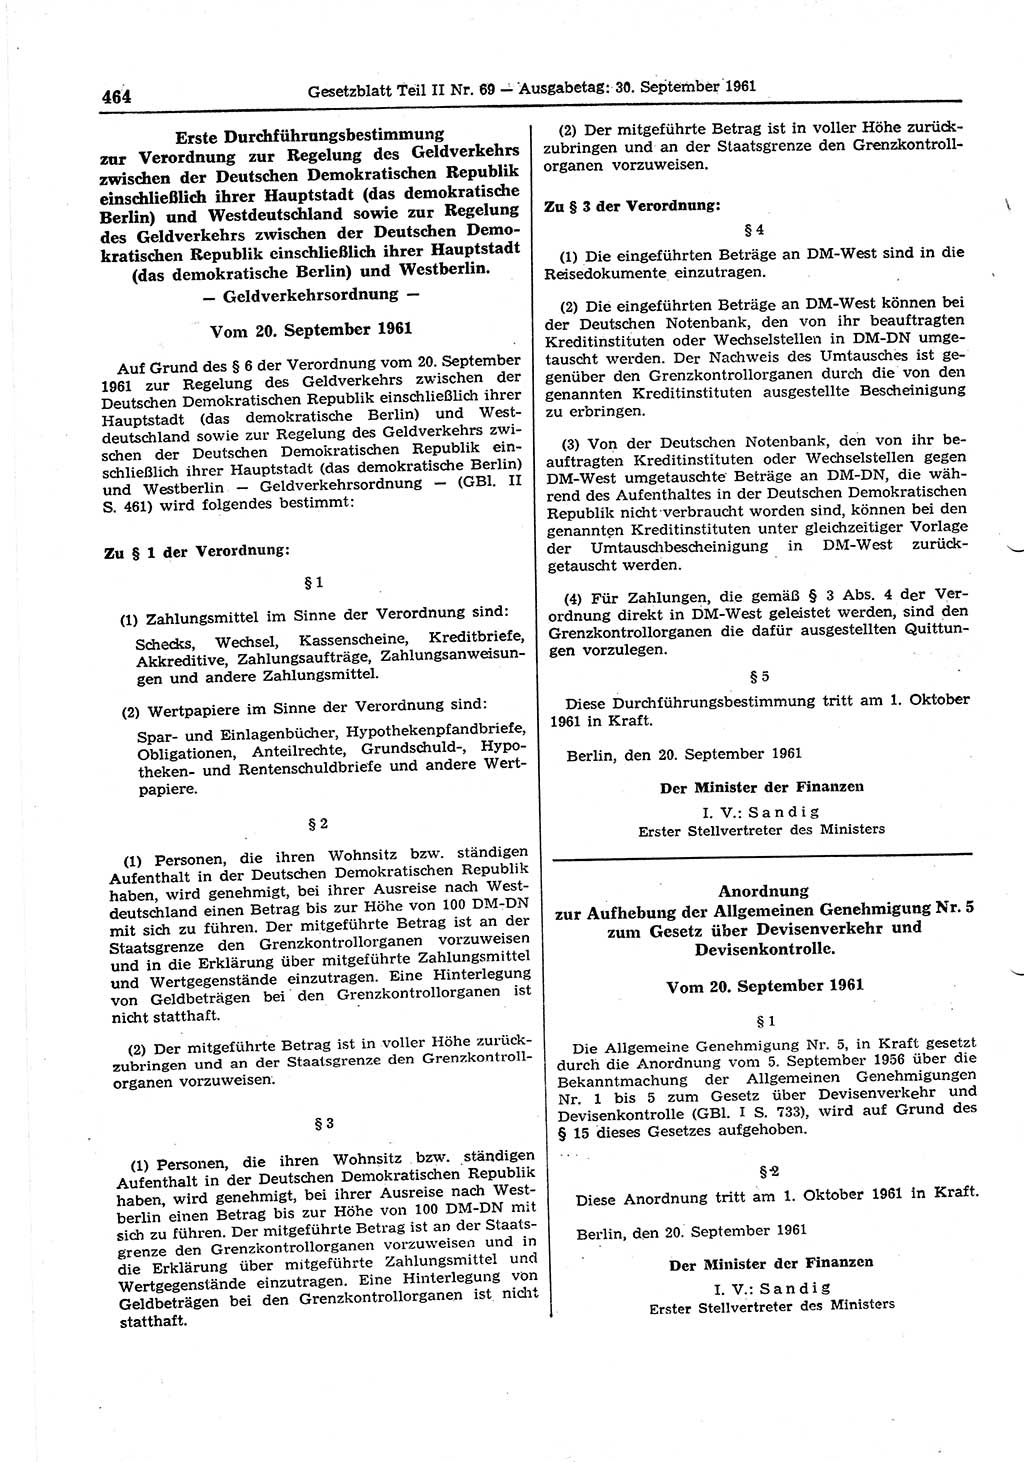 Gesetzblatt (GBl.) der Deutschen Demokratischen Republik (DDR) Teil ⅠⅠ 1961, Seite 464 (GBl. DDR ⅠⅠ 1961, S. 464)